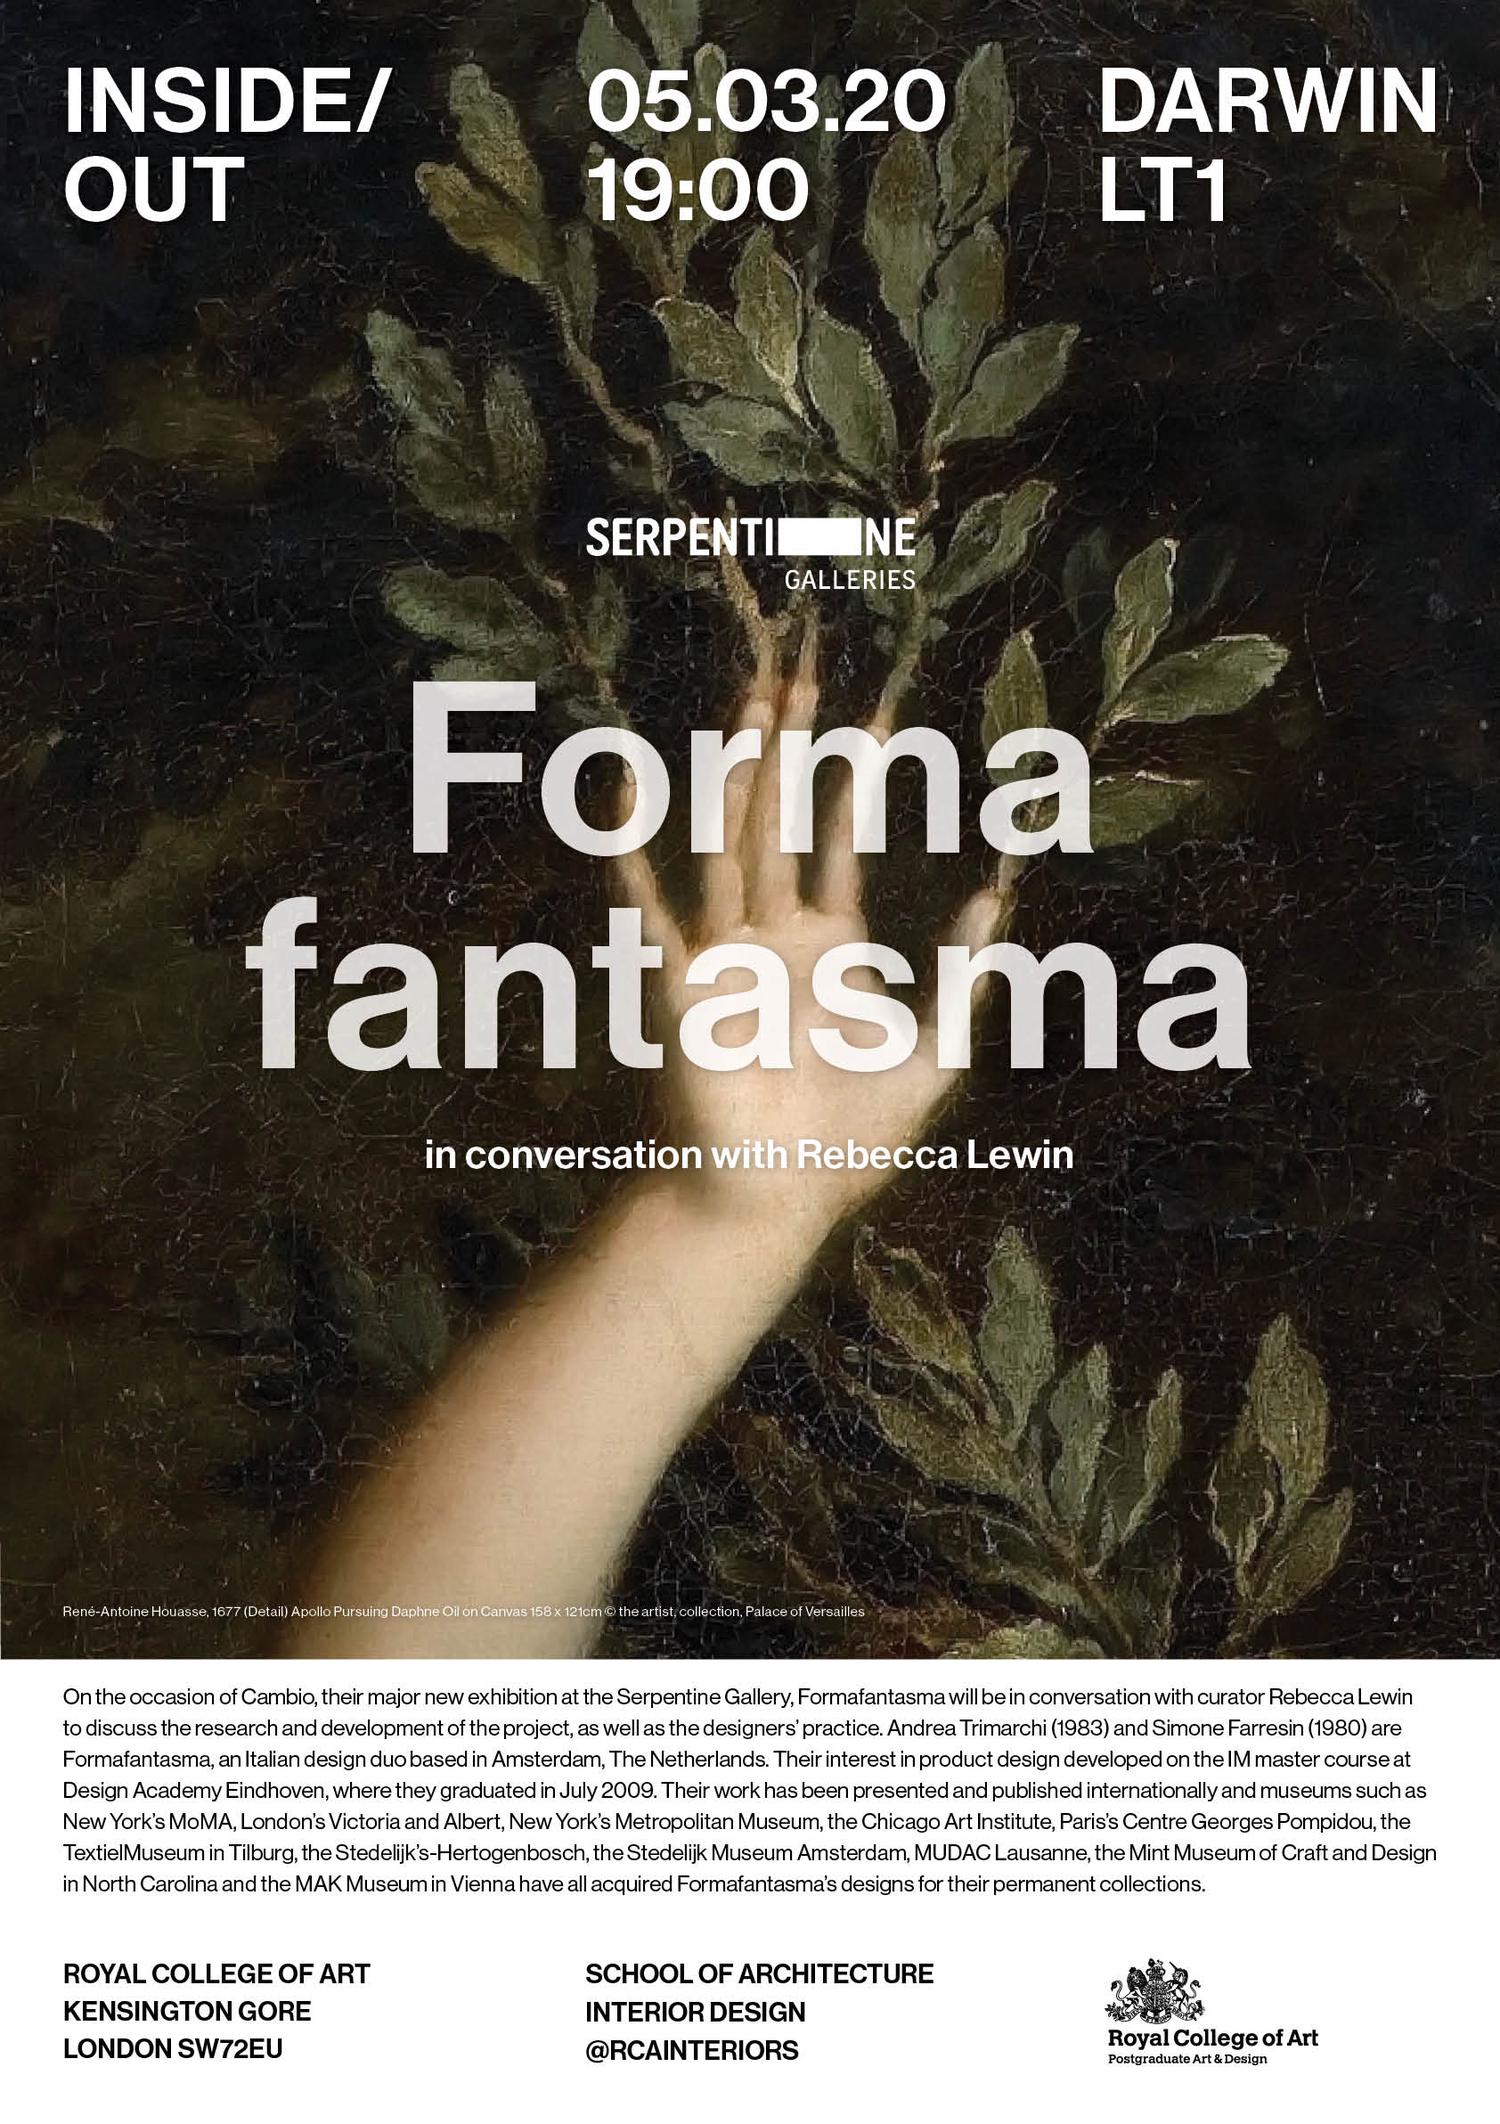 Formafantasma and Serpentine Galleries poster (Exhibition Design)